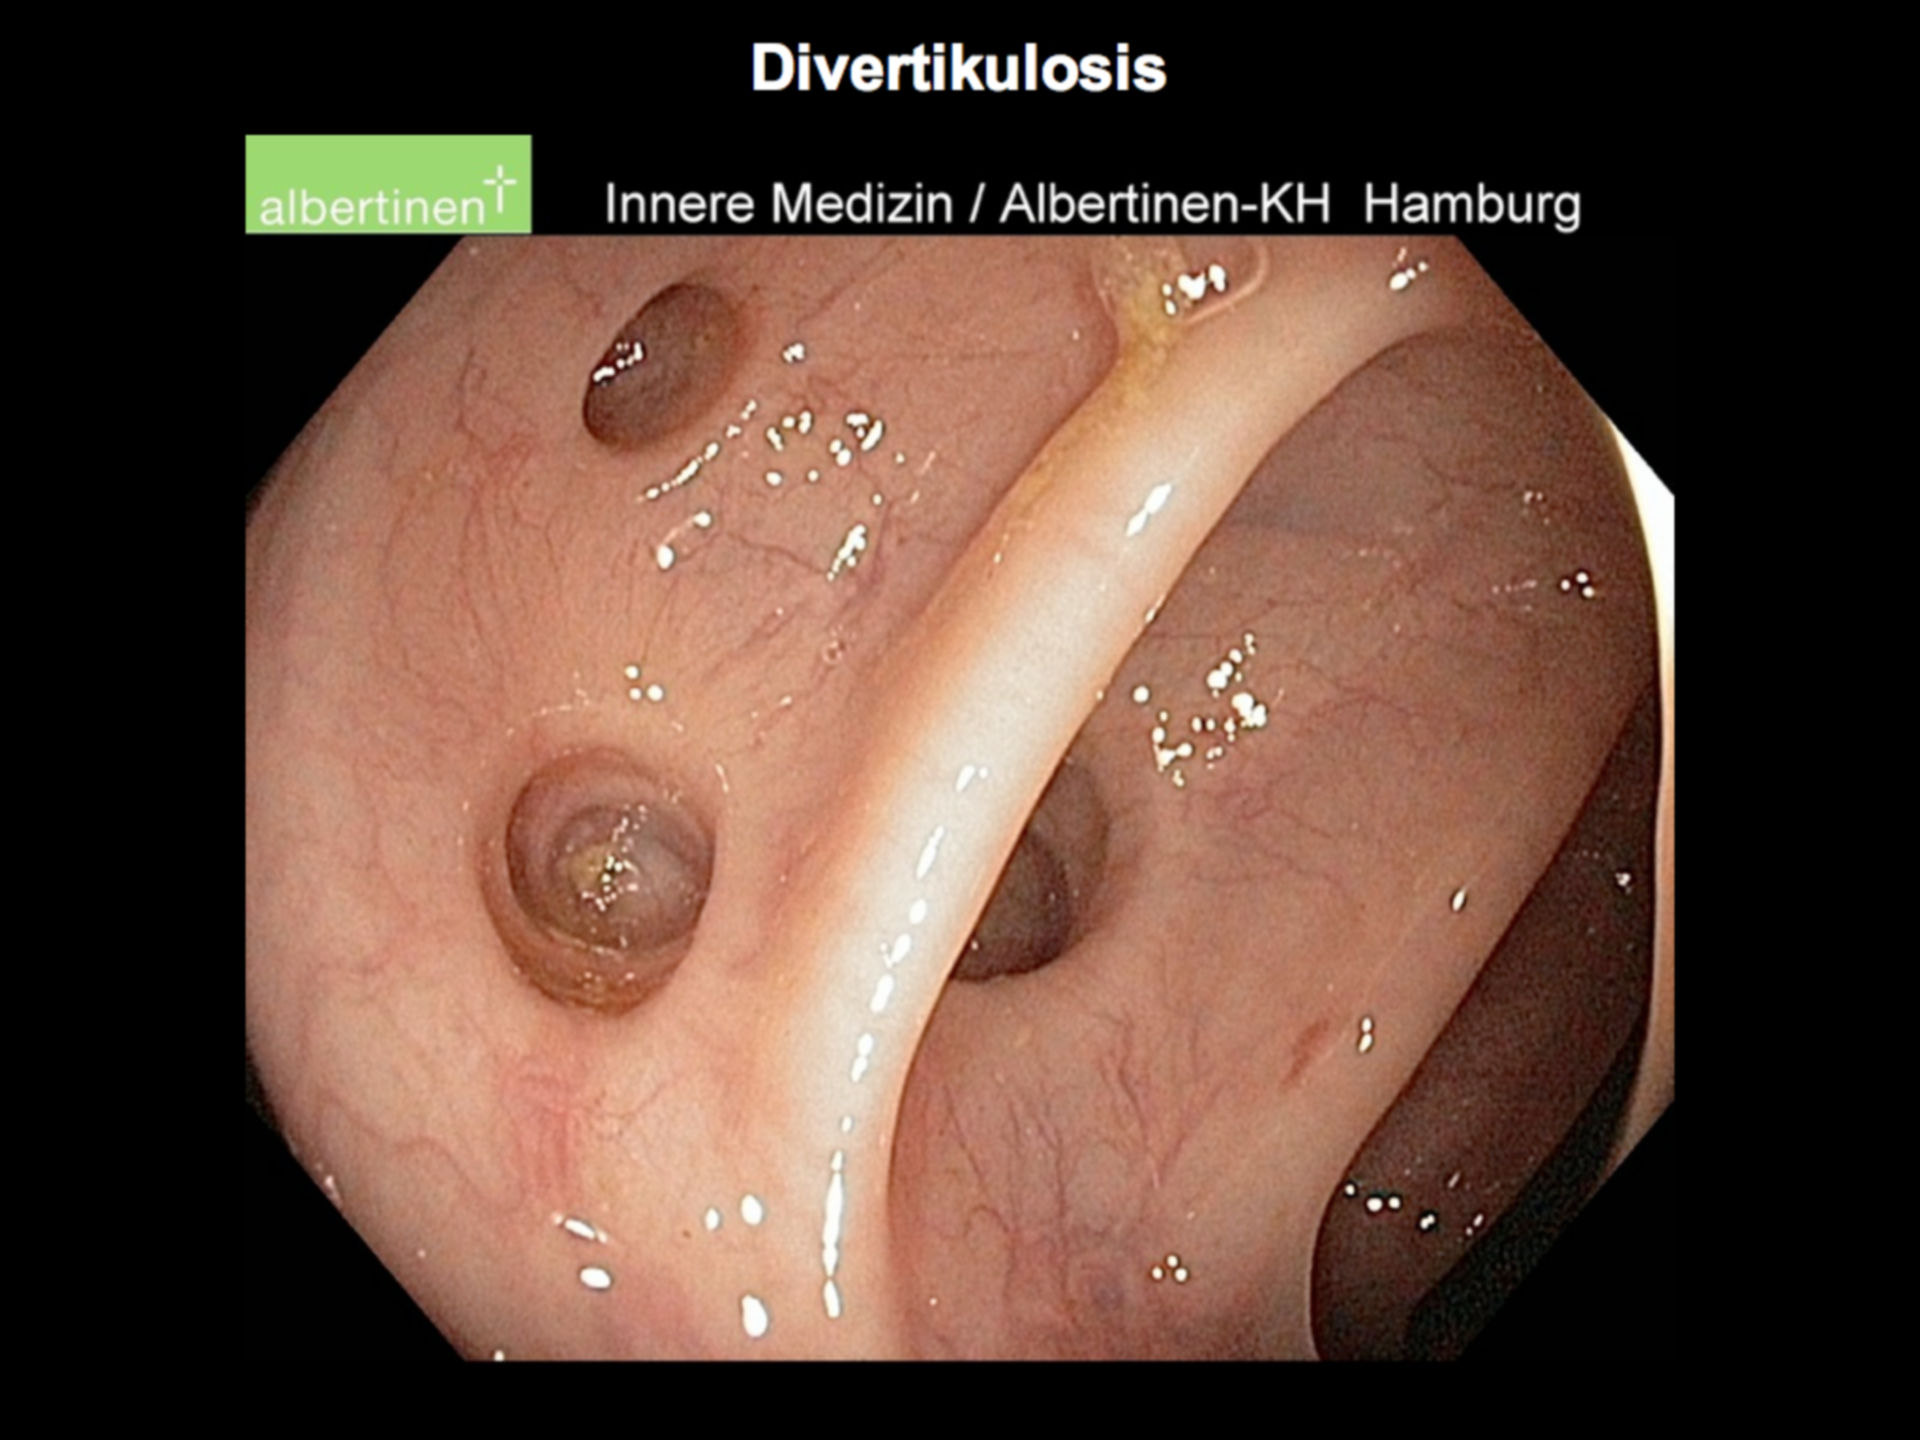 Endoscopy: Diverticulosis